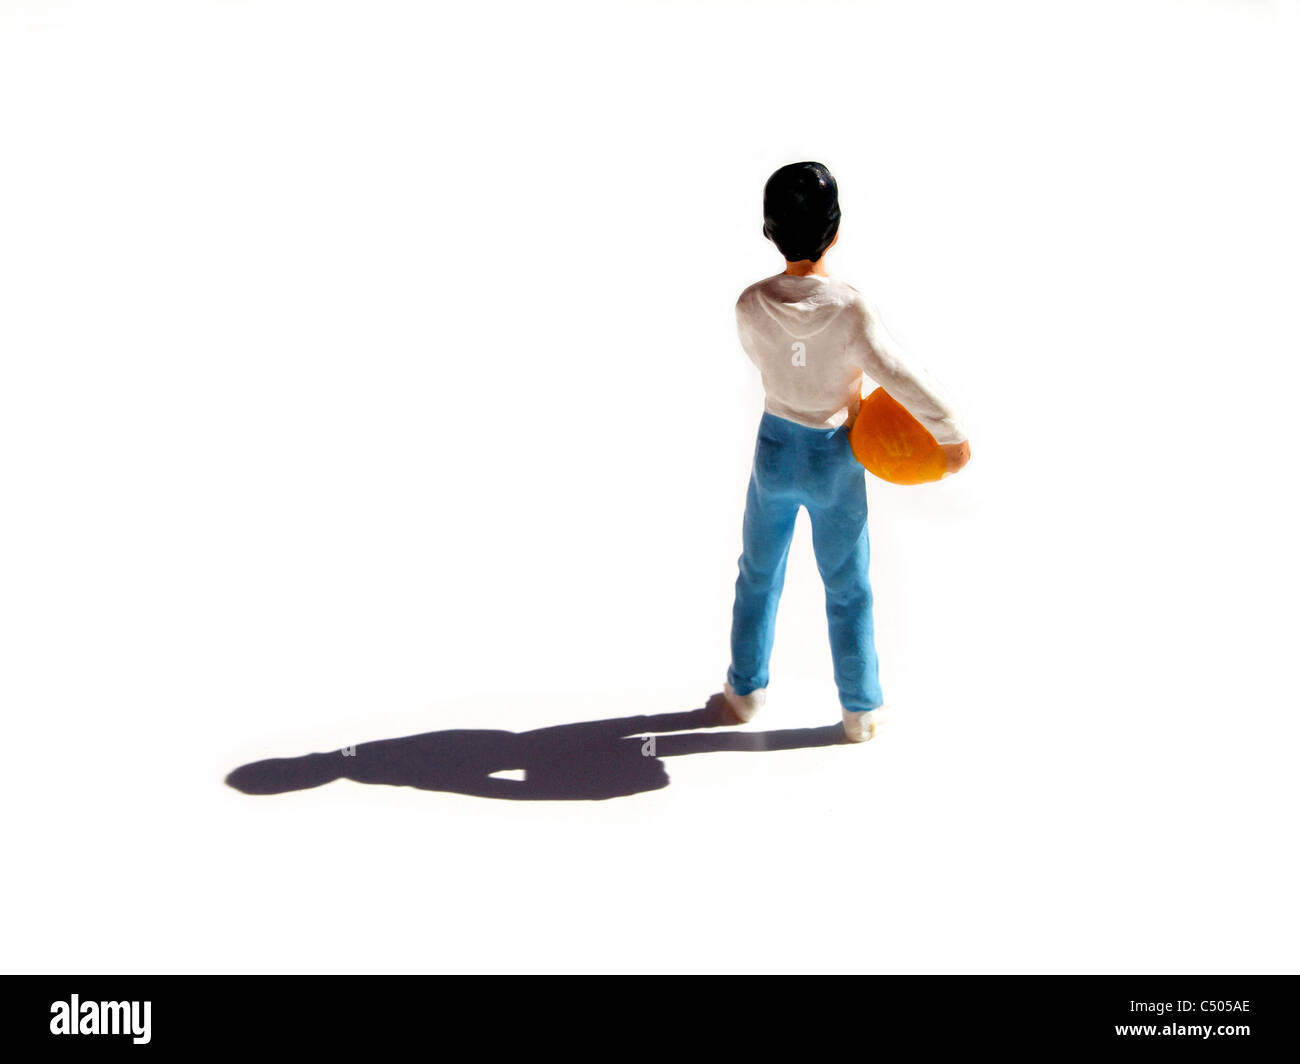 Figurine représentant un jeune garçon avec un ballon de football sous le bras - vue arrière Banque D'Images